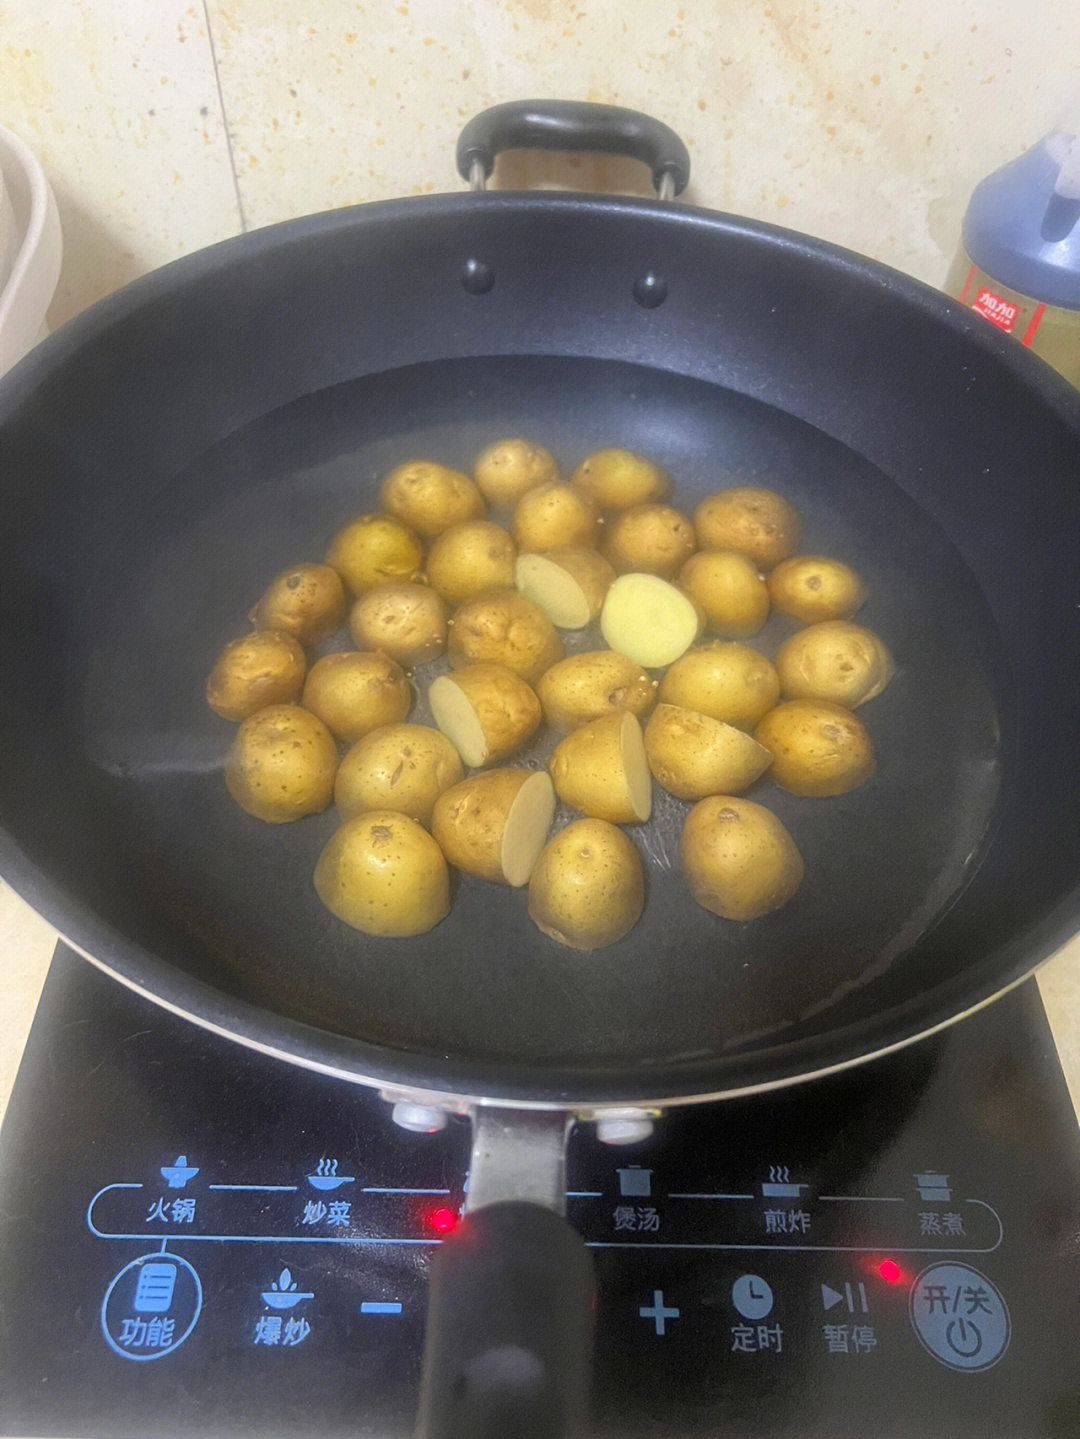 蒜,生抽,白芝麻,黑胡椒粉,孜然粉,辣椒面做法:1:小土豆洗净切两半,锅